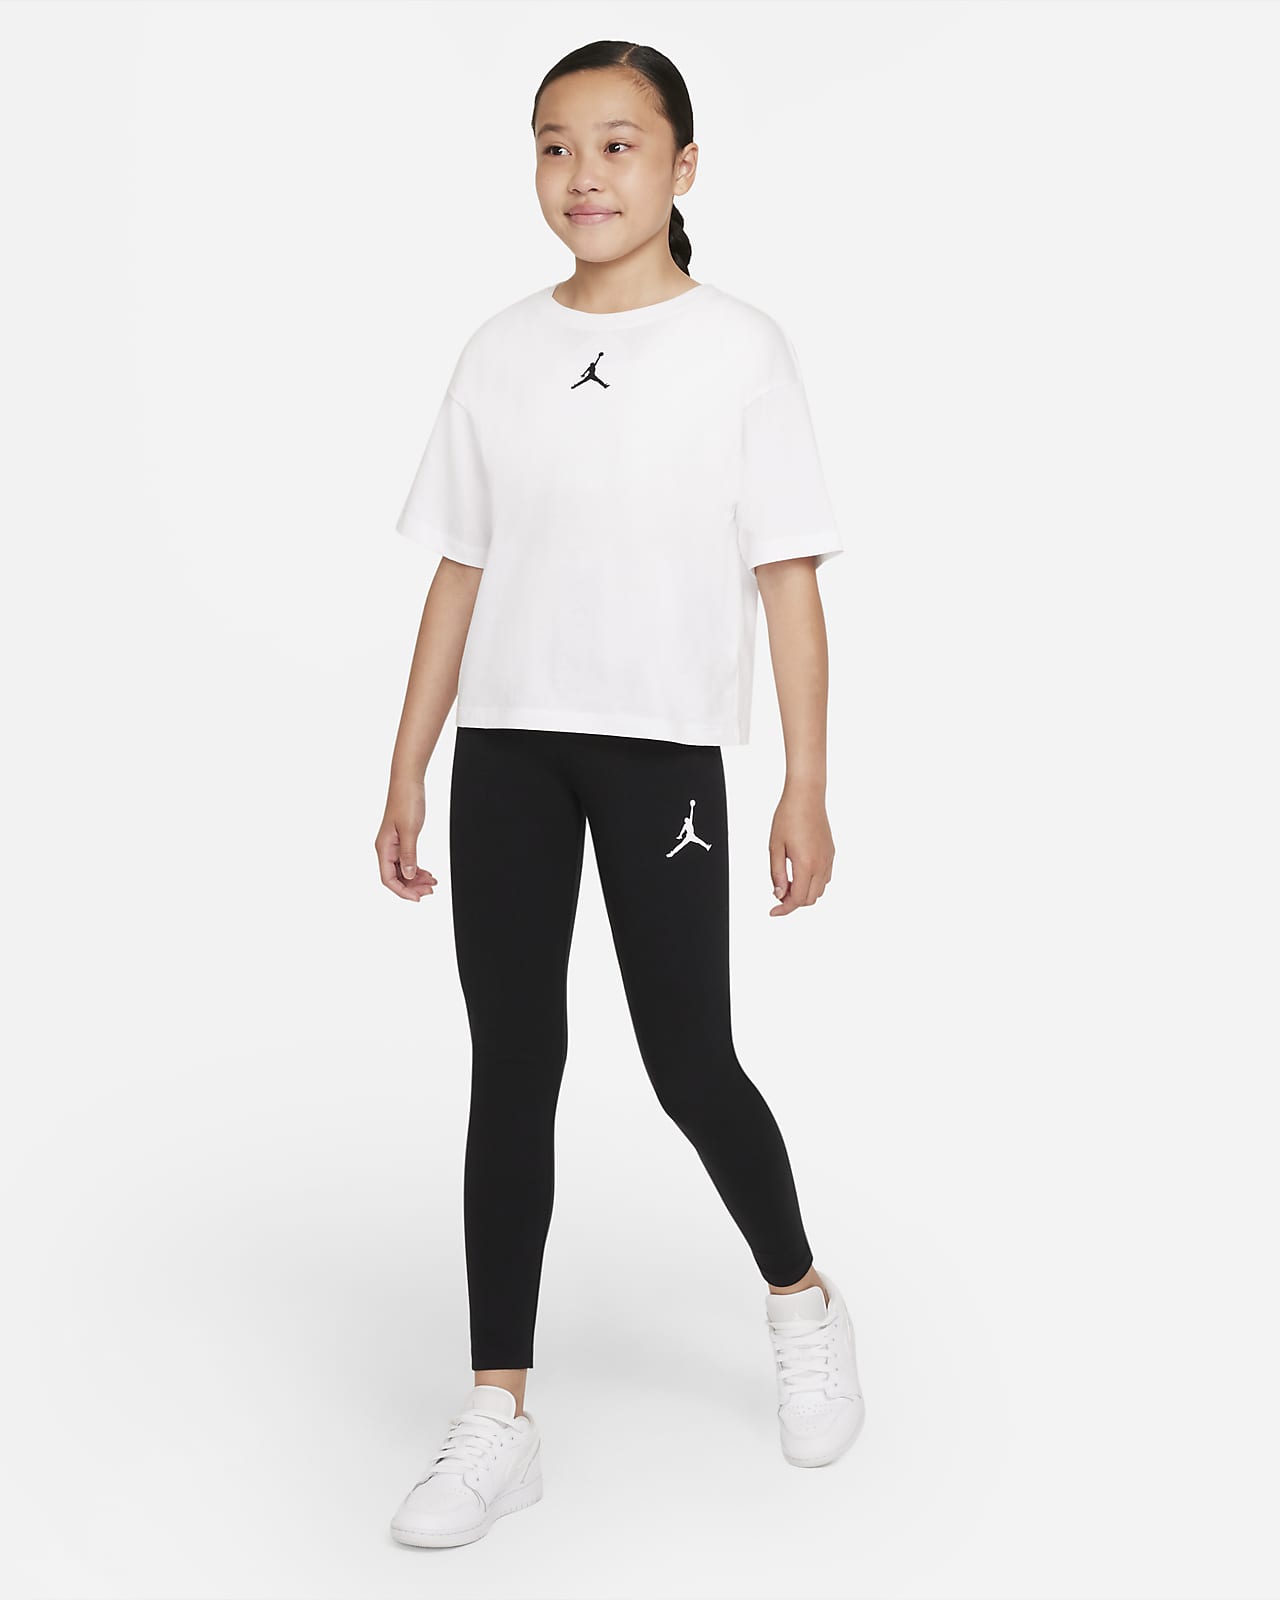 Brilliant Basics Kids Fleece Plain Legging - Black